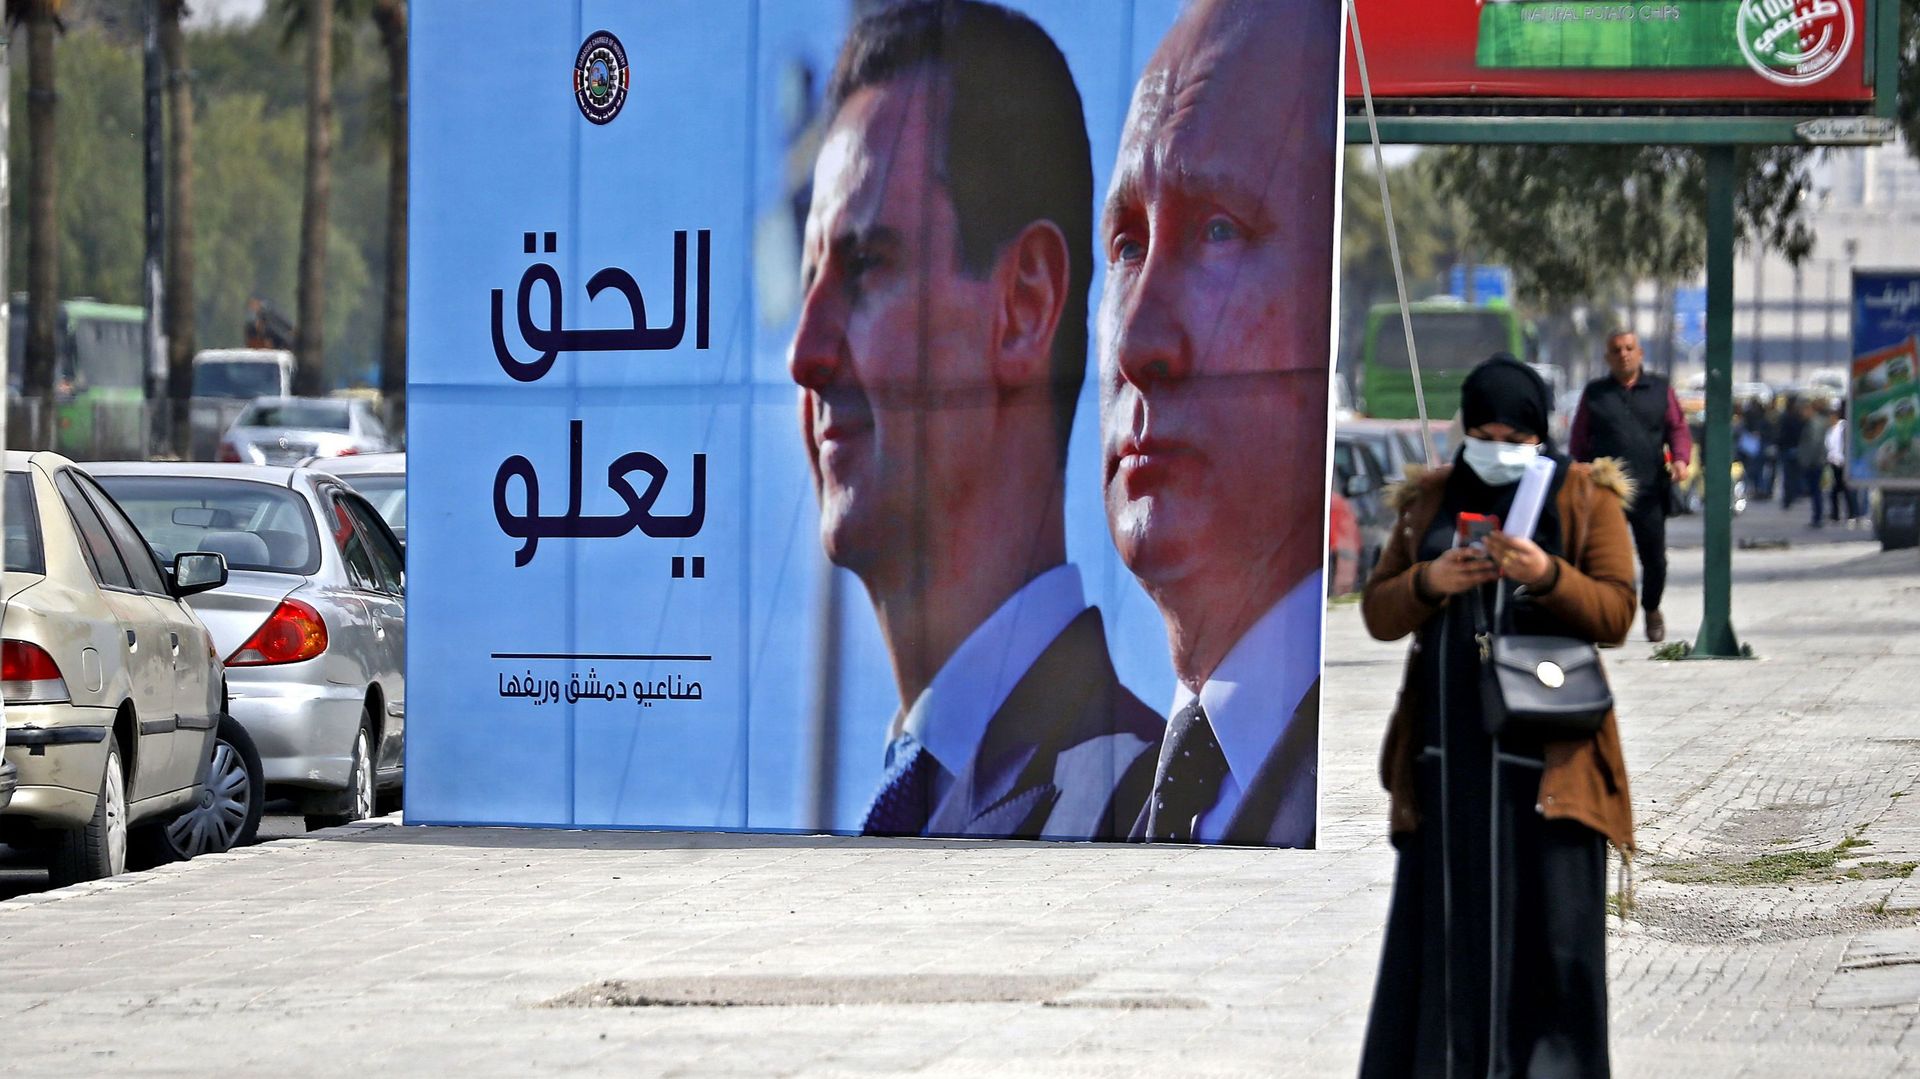 Une bannière représentant le président syrien Bachar al-Assad et le président russe Vladimir Poutine et portant l’inscription "La justice prévaut" est affichée le long d’une autoroute dans la capitale syrienne Damas, le 8 mars 2022.